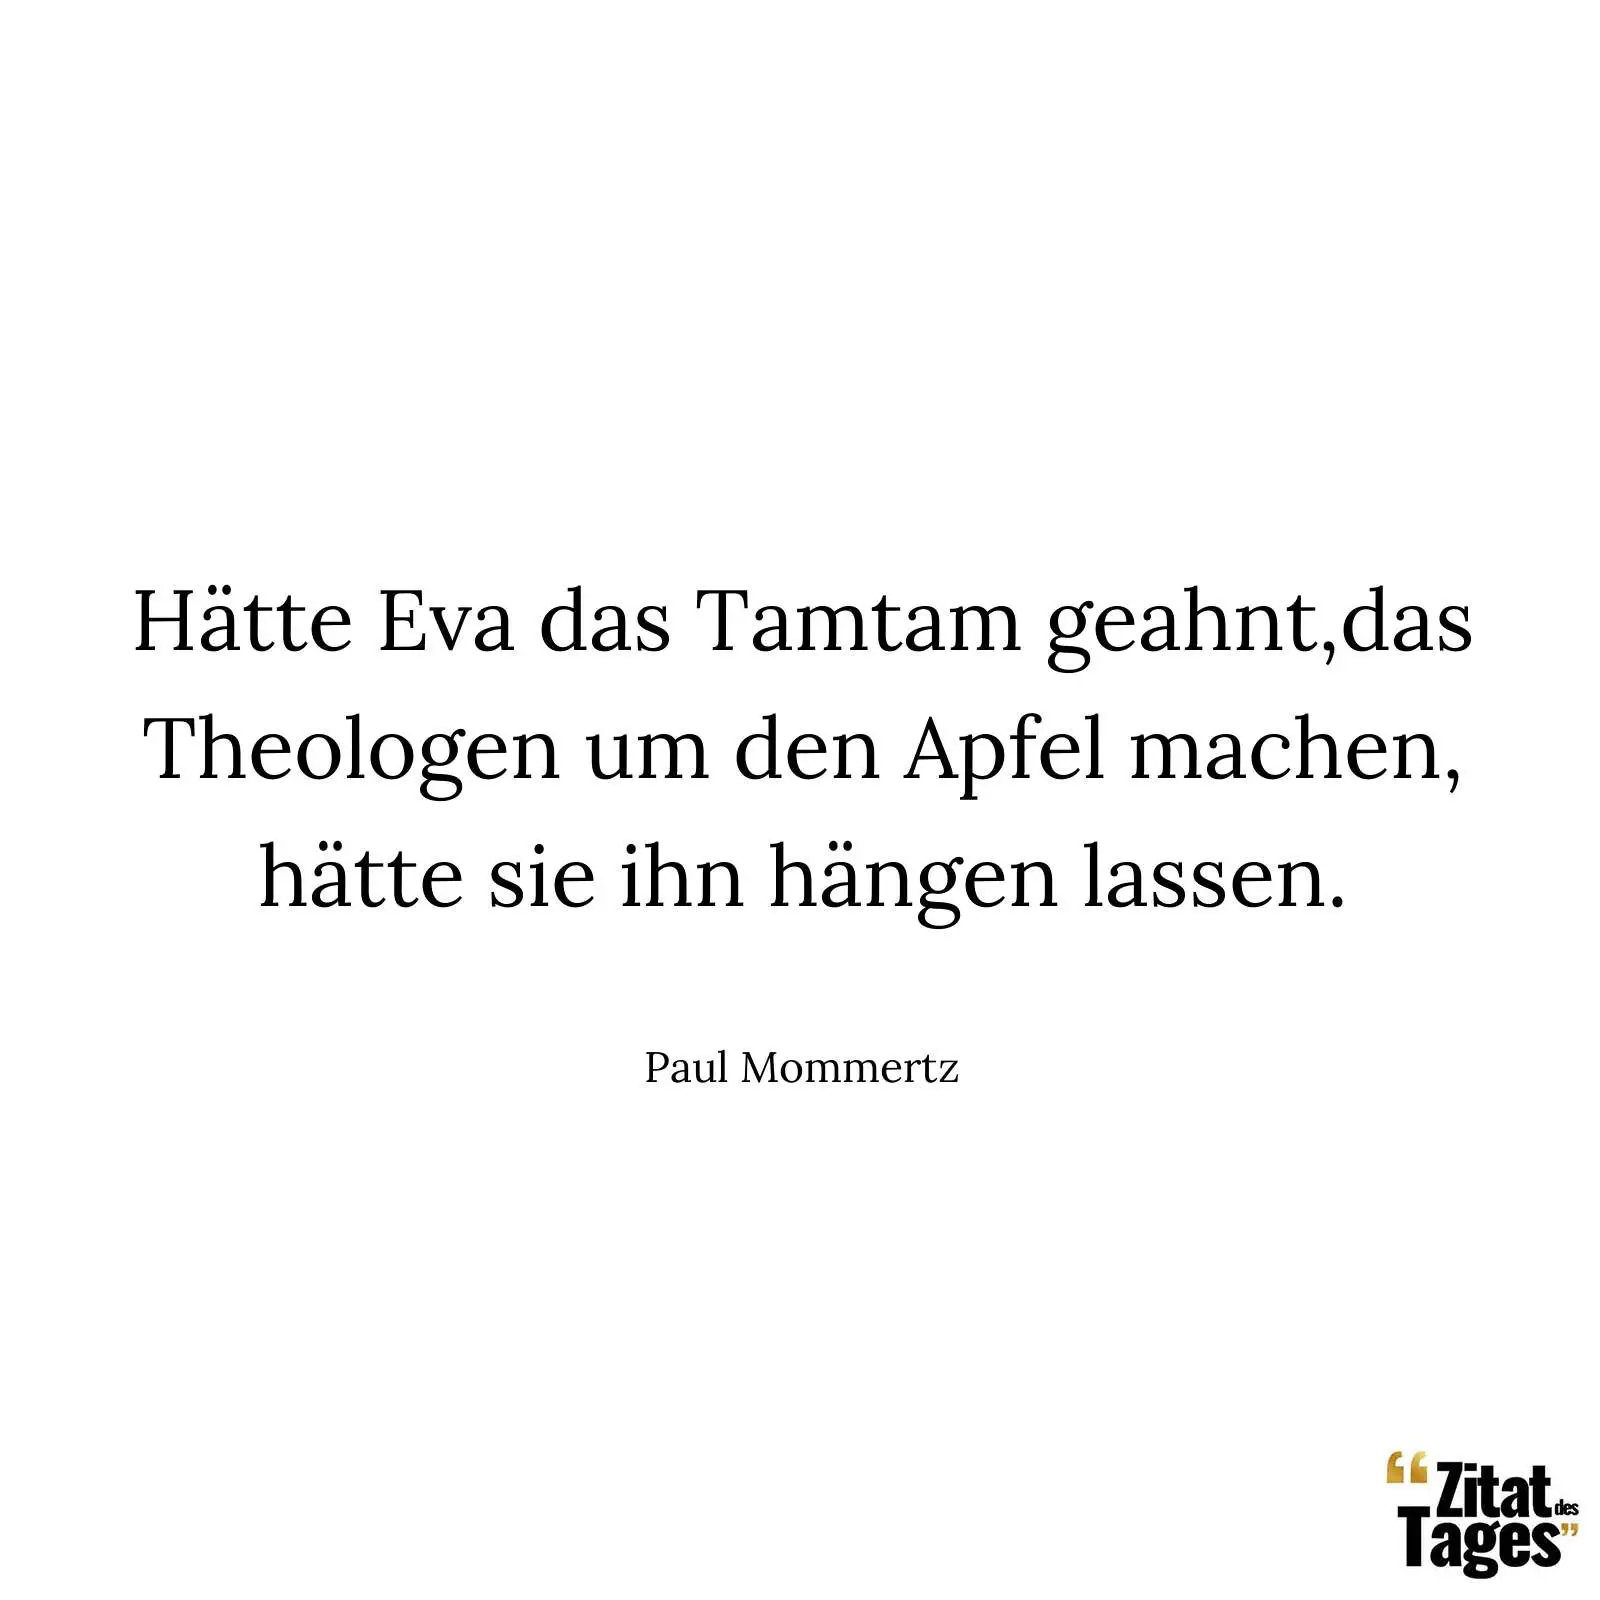 Hätte Eva das Tamtam geahnt,das Theologen um den Apfel machen, hätte sie ihn hängen lassen. - Paul Mommertz